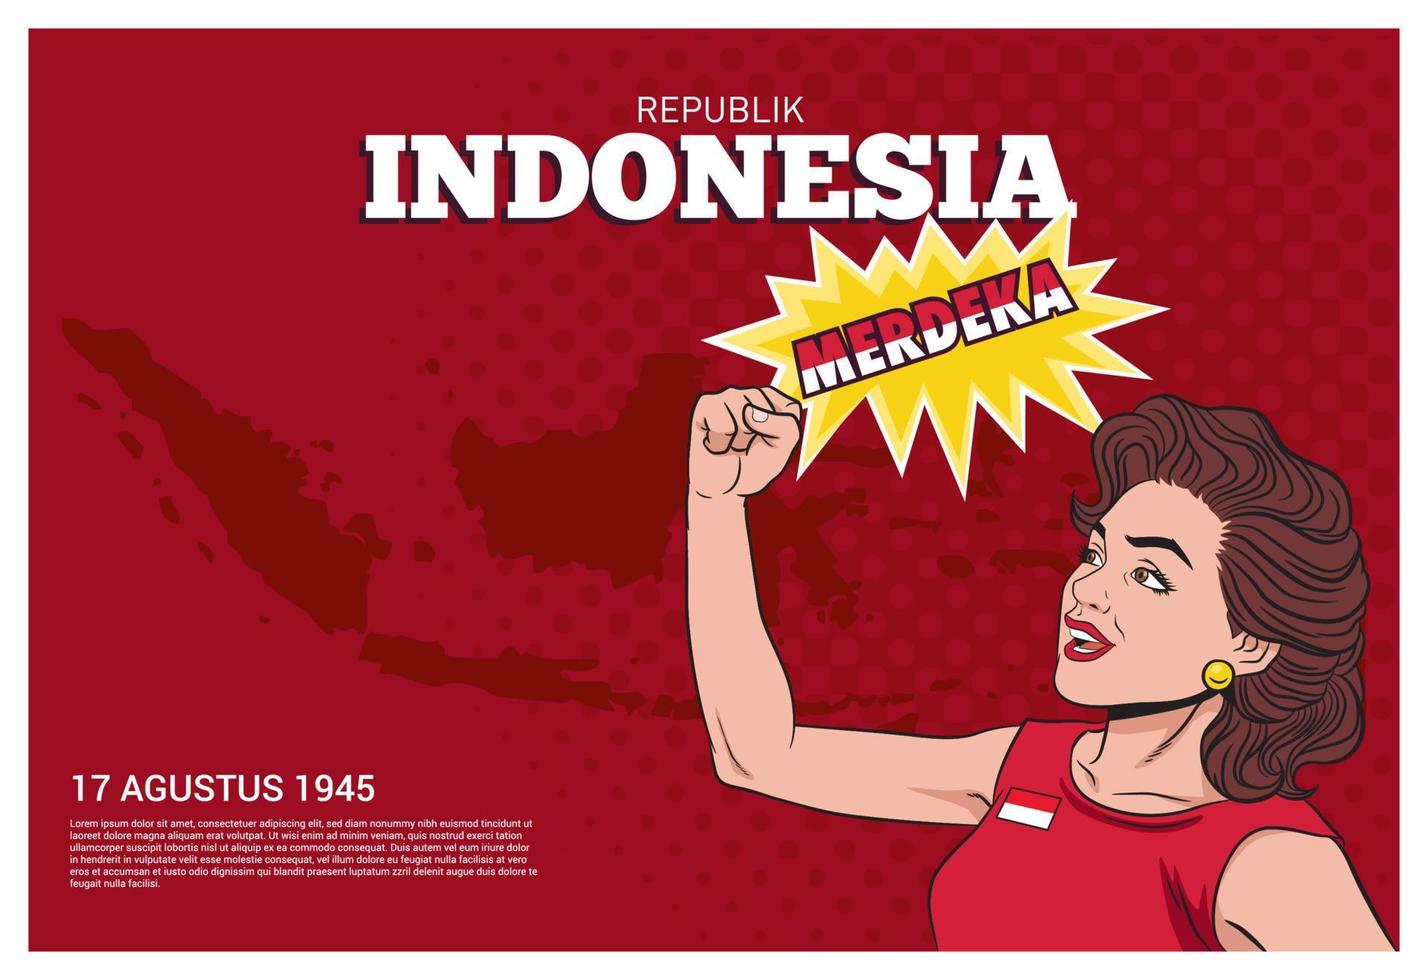 une femme rétro pop art heureuse serra les mains et cria merdeka. stock de vecteur du jour de l'indépendance de l'indonésie.